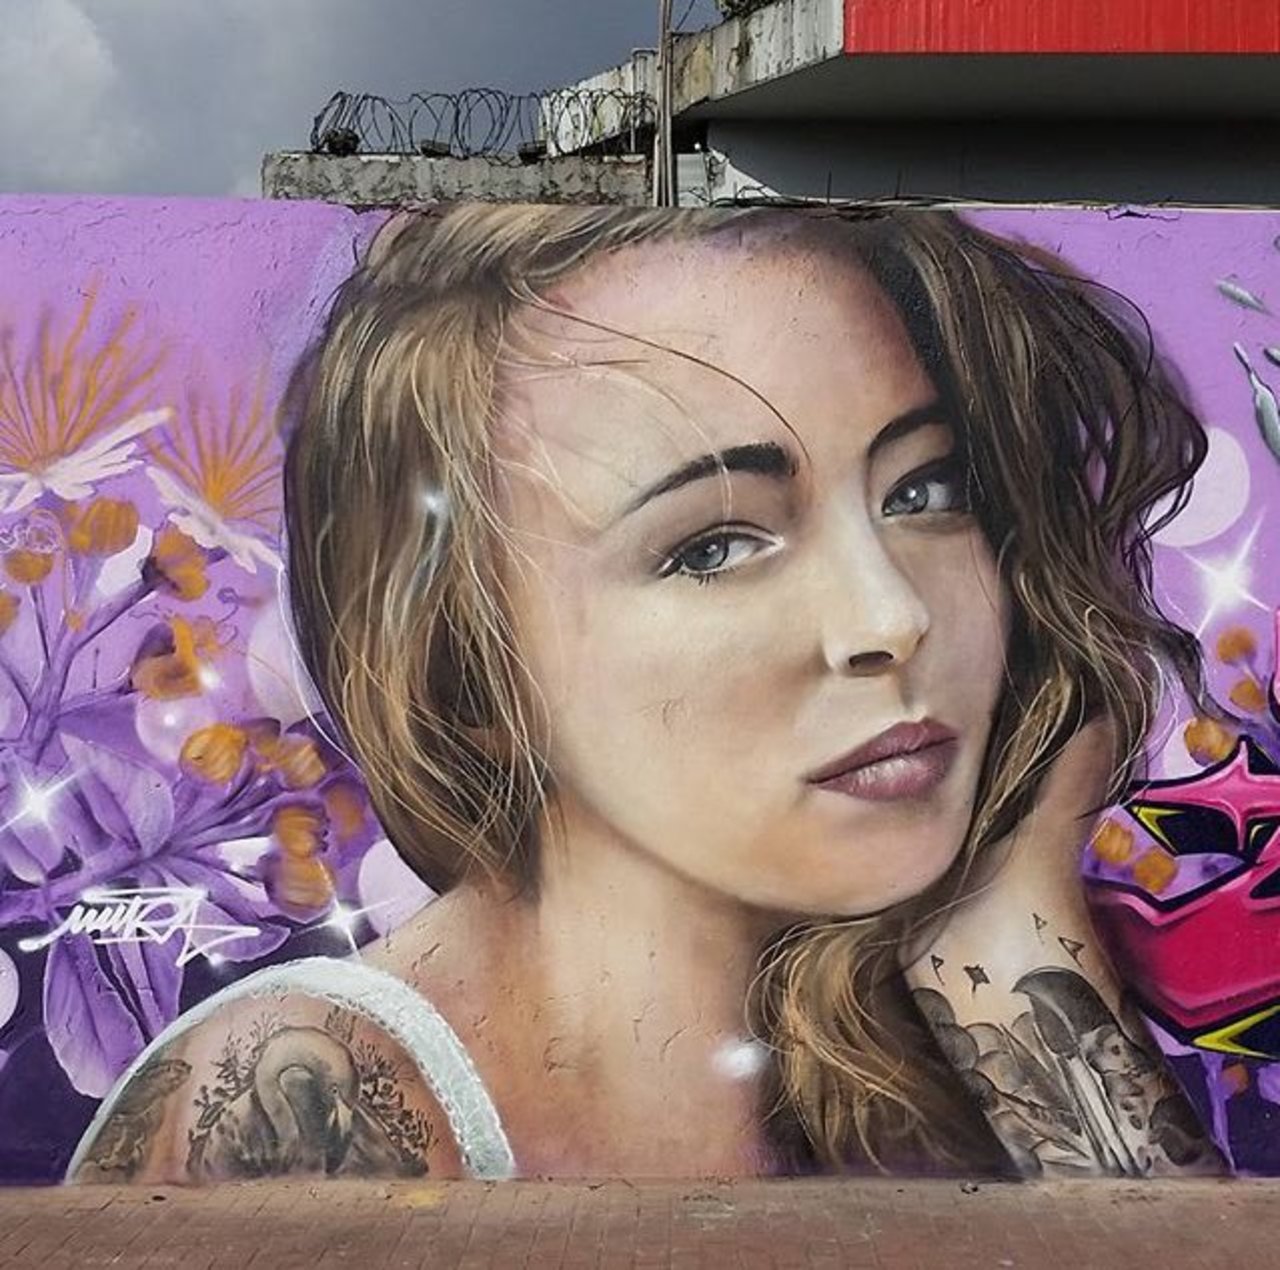 New Street Art by Mantarea 

#art #graffiti #mural #streetart https://t.co/HKlqVEvJ6Q